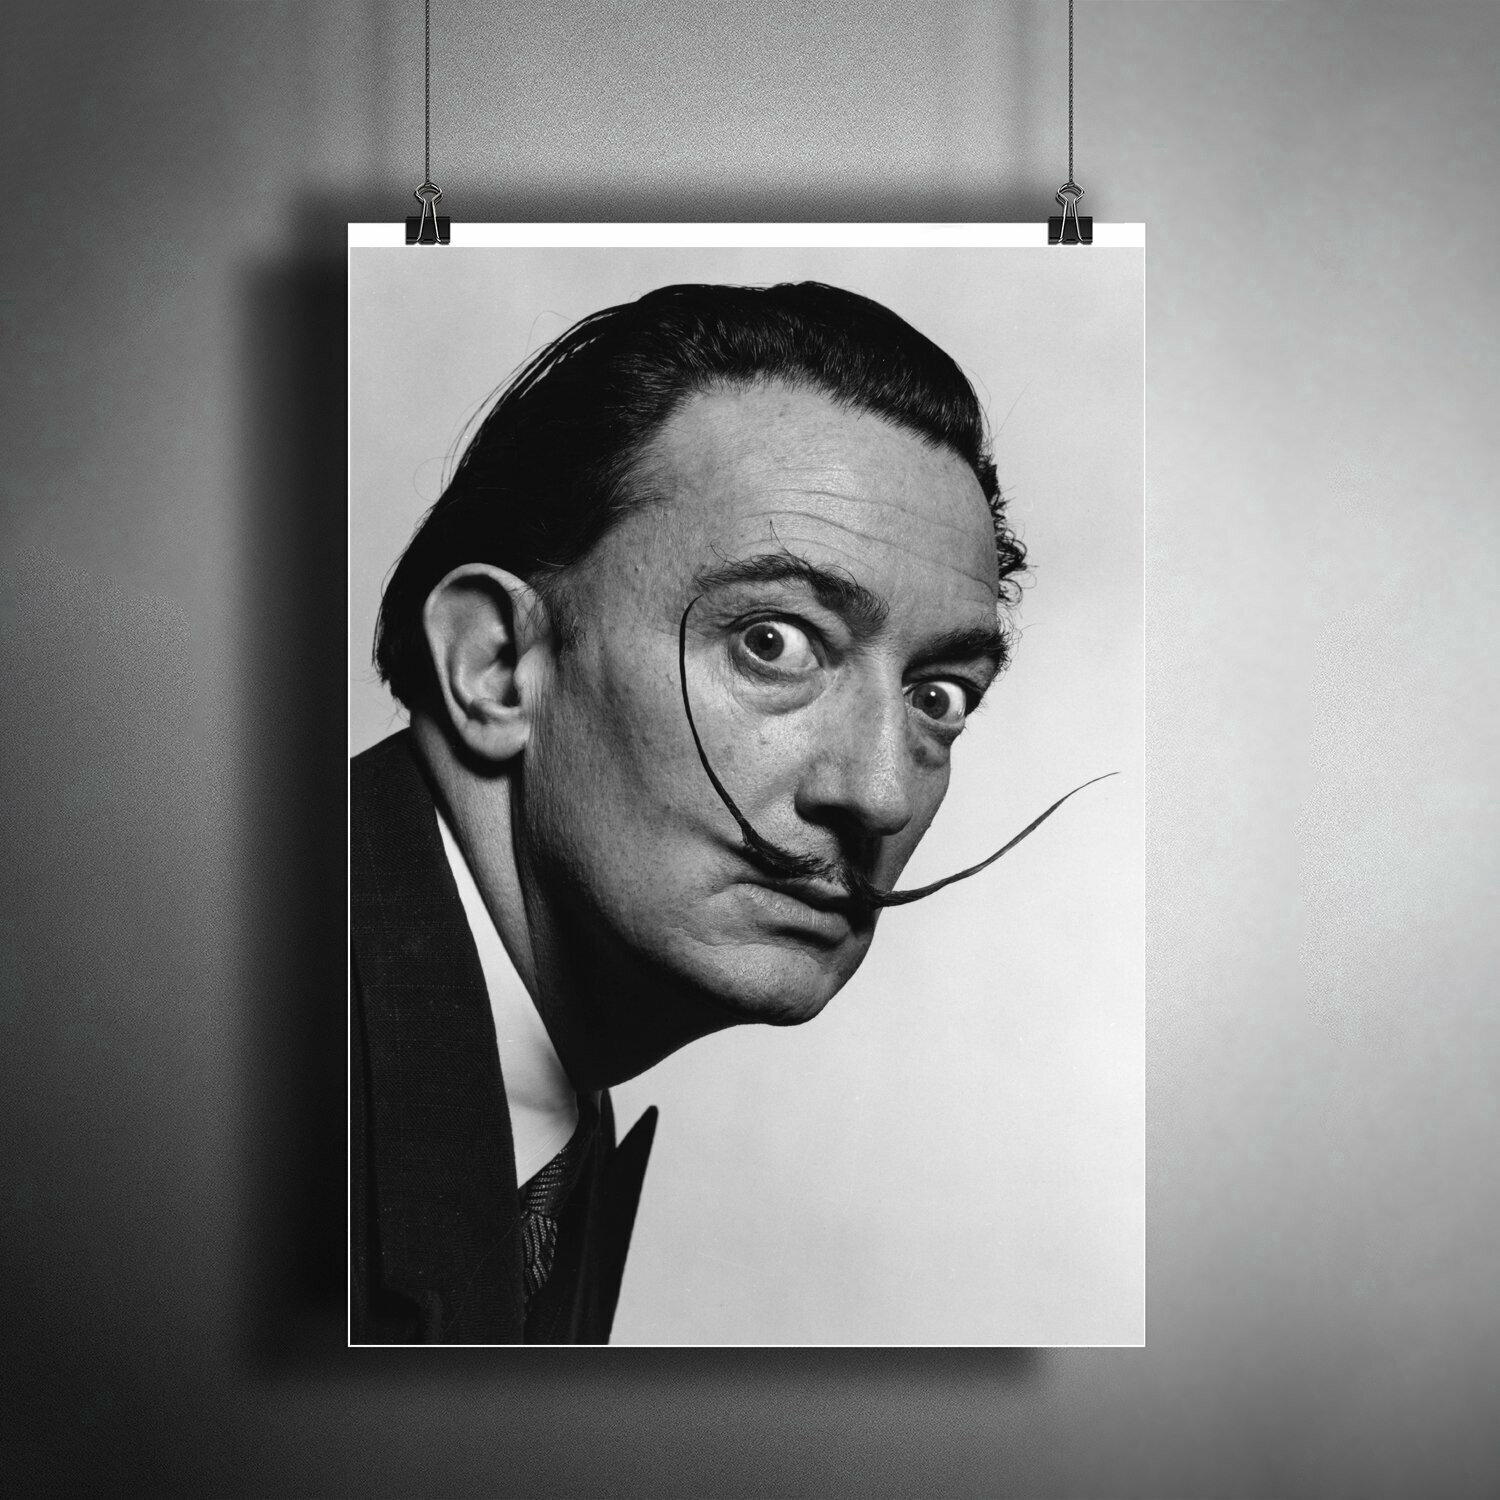 Постер плакат для интерьера "Испанский художник Сальвадор Дали (Salvador Dali). Представитель сюрреализма" / A3 (297 x 420 мм)